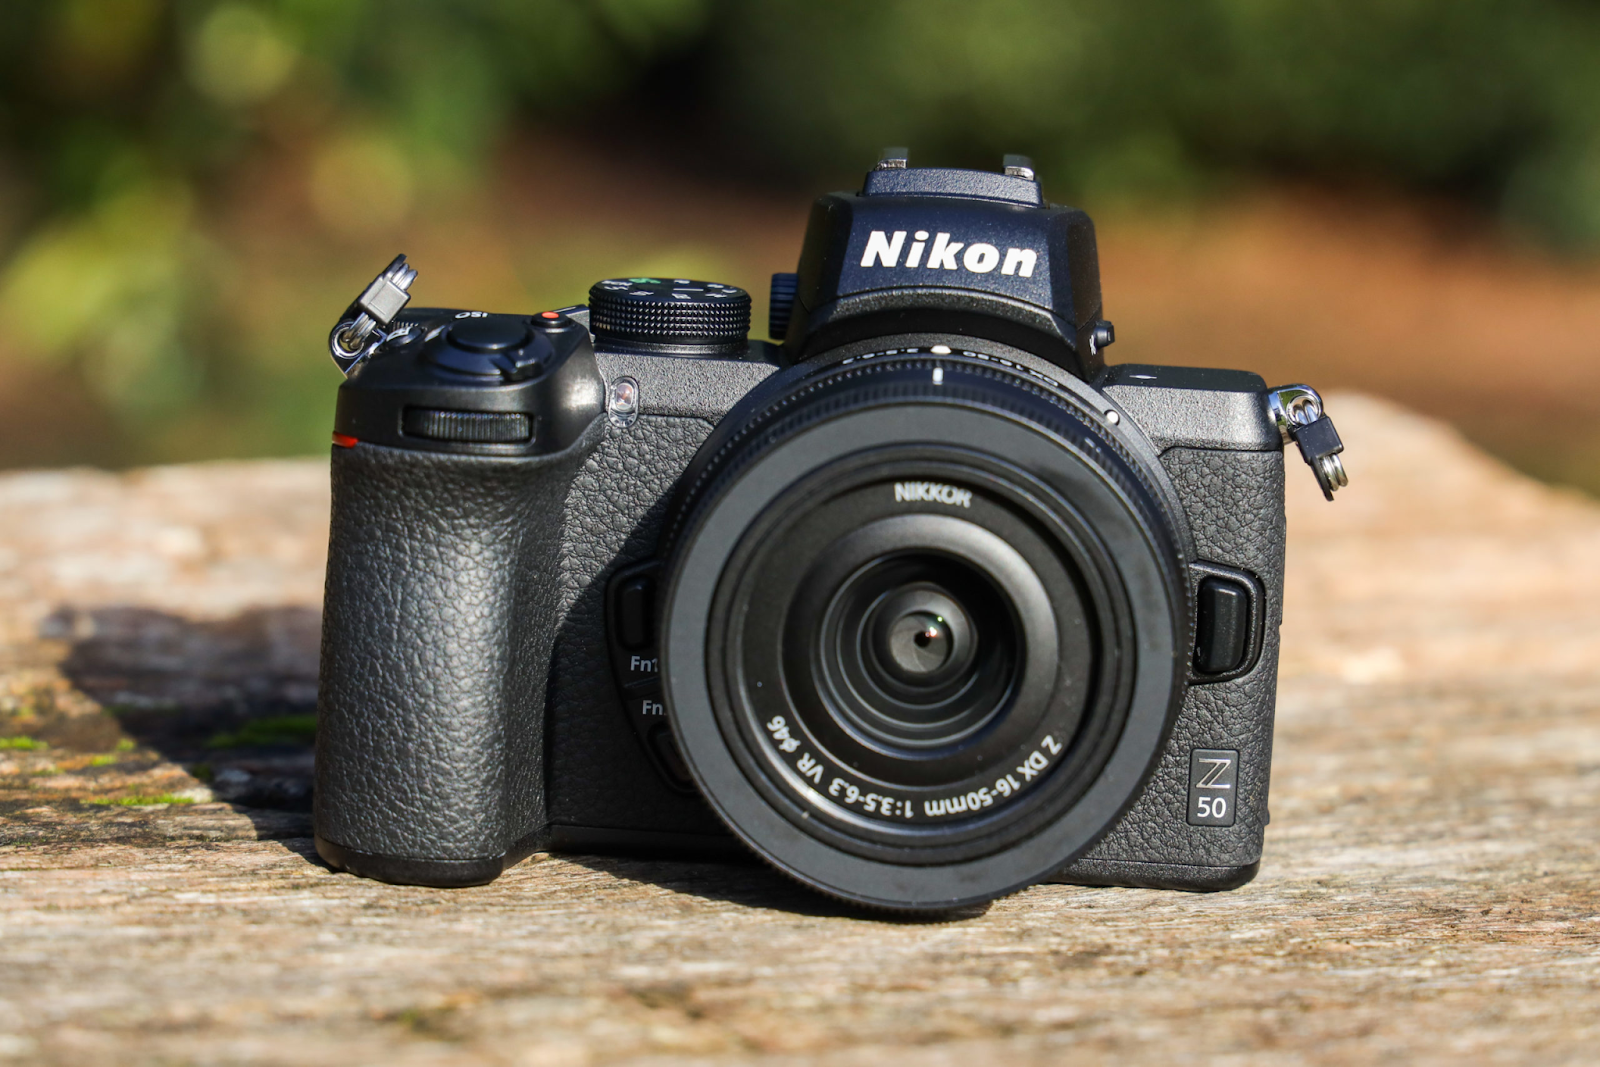 4. Nikon Z50